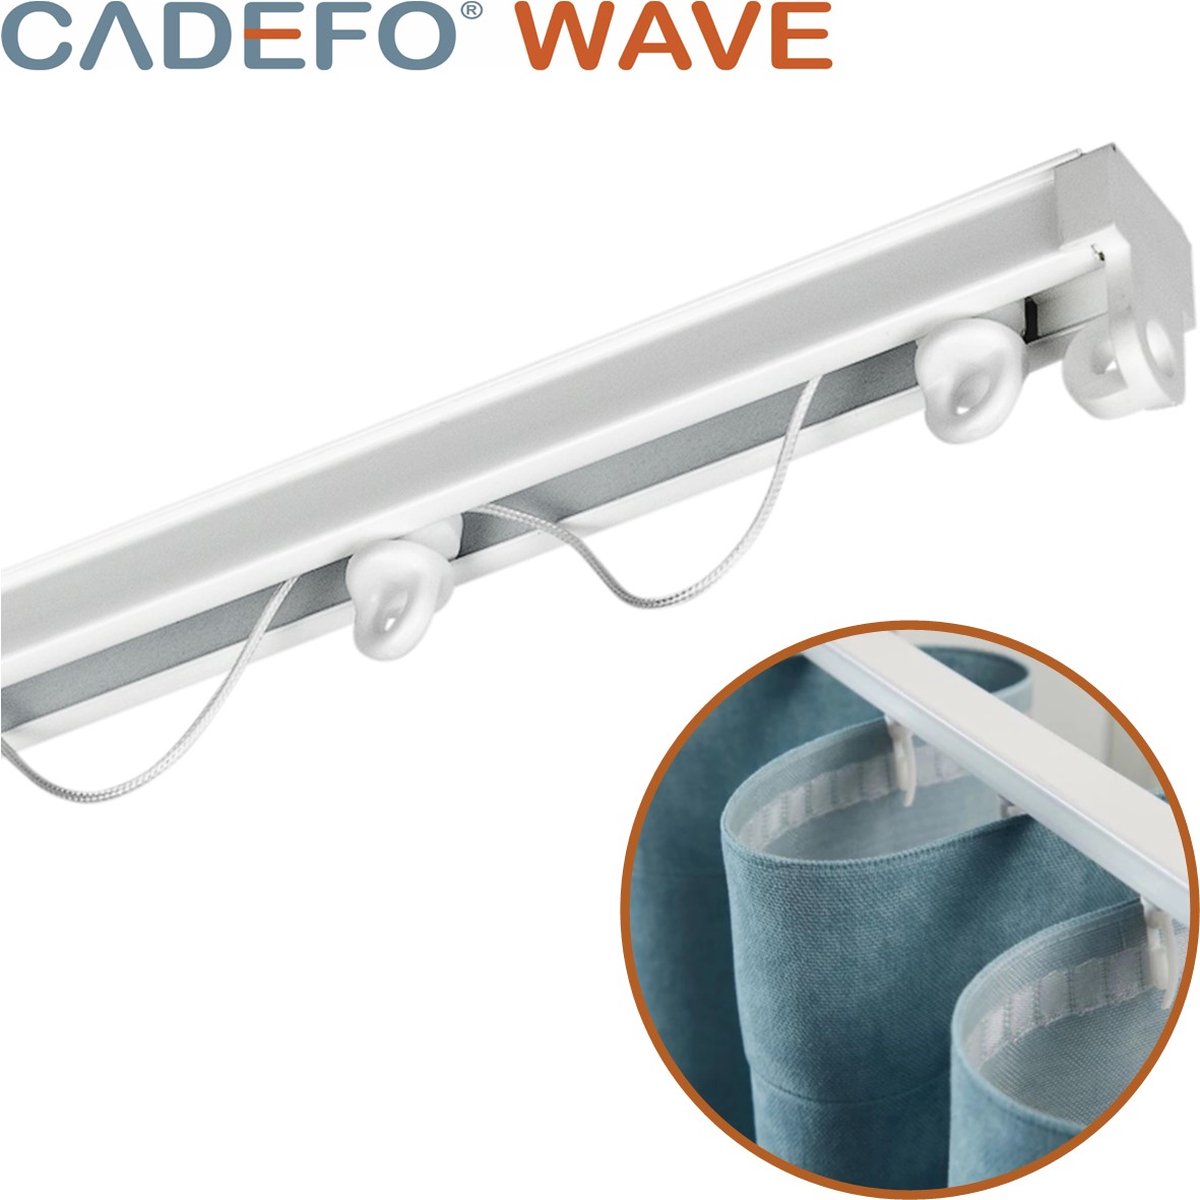 CADEFO WAVE (351 - 400 cm) Gordijnrails - Compleet op maat! - UIT 1 STUK - Leverbaar tot 6 meter - Plafondbevestiging - Lengte 366 cm